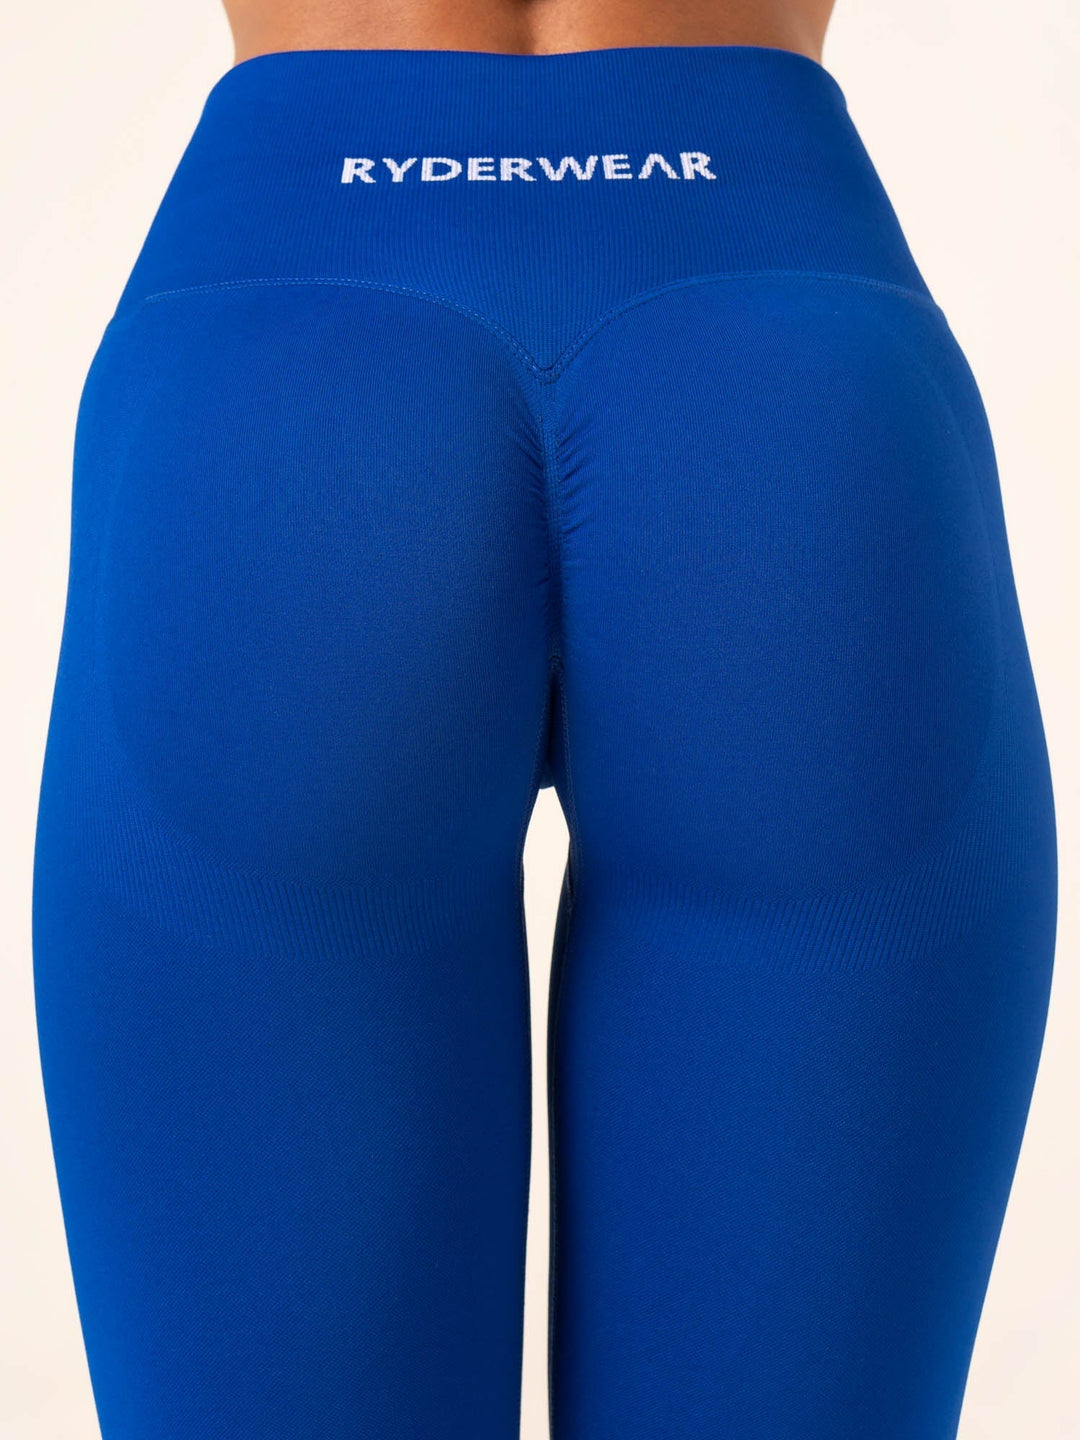 Lift BBL Scrunch Seamless Leggings - Cobalt Blue Clothing Ryderwear 